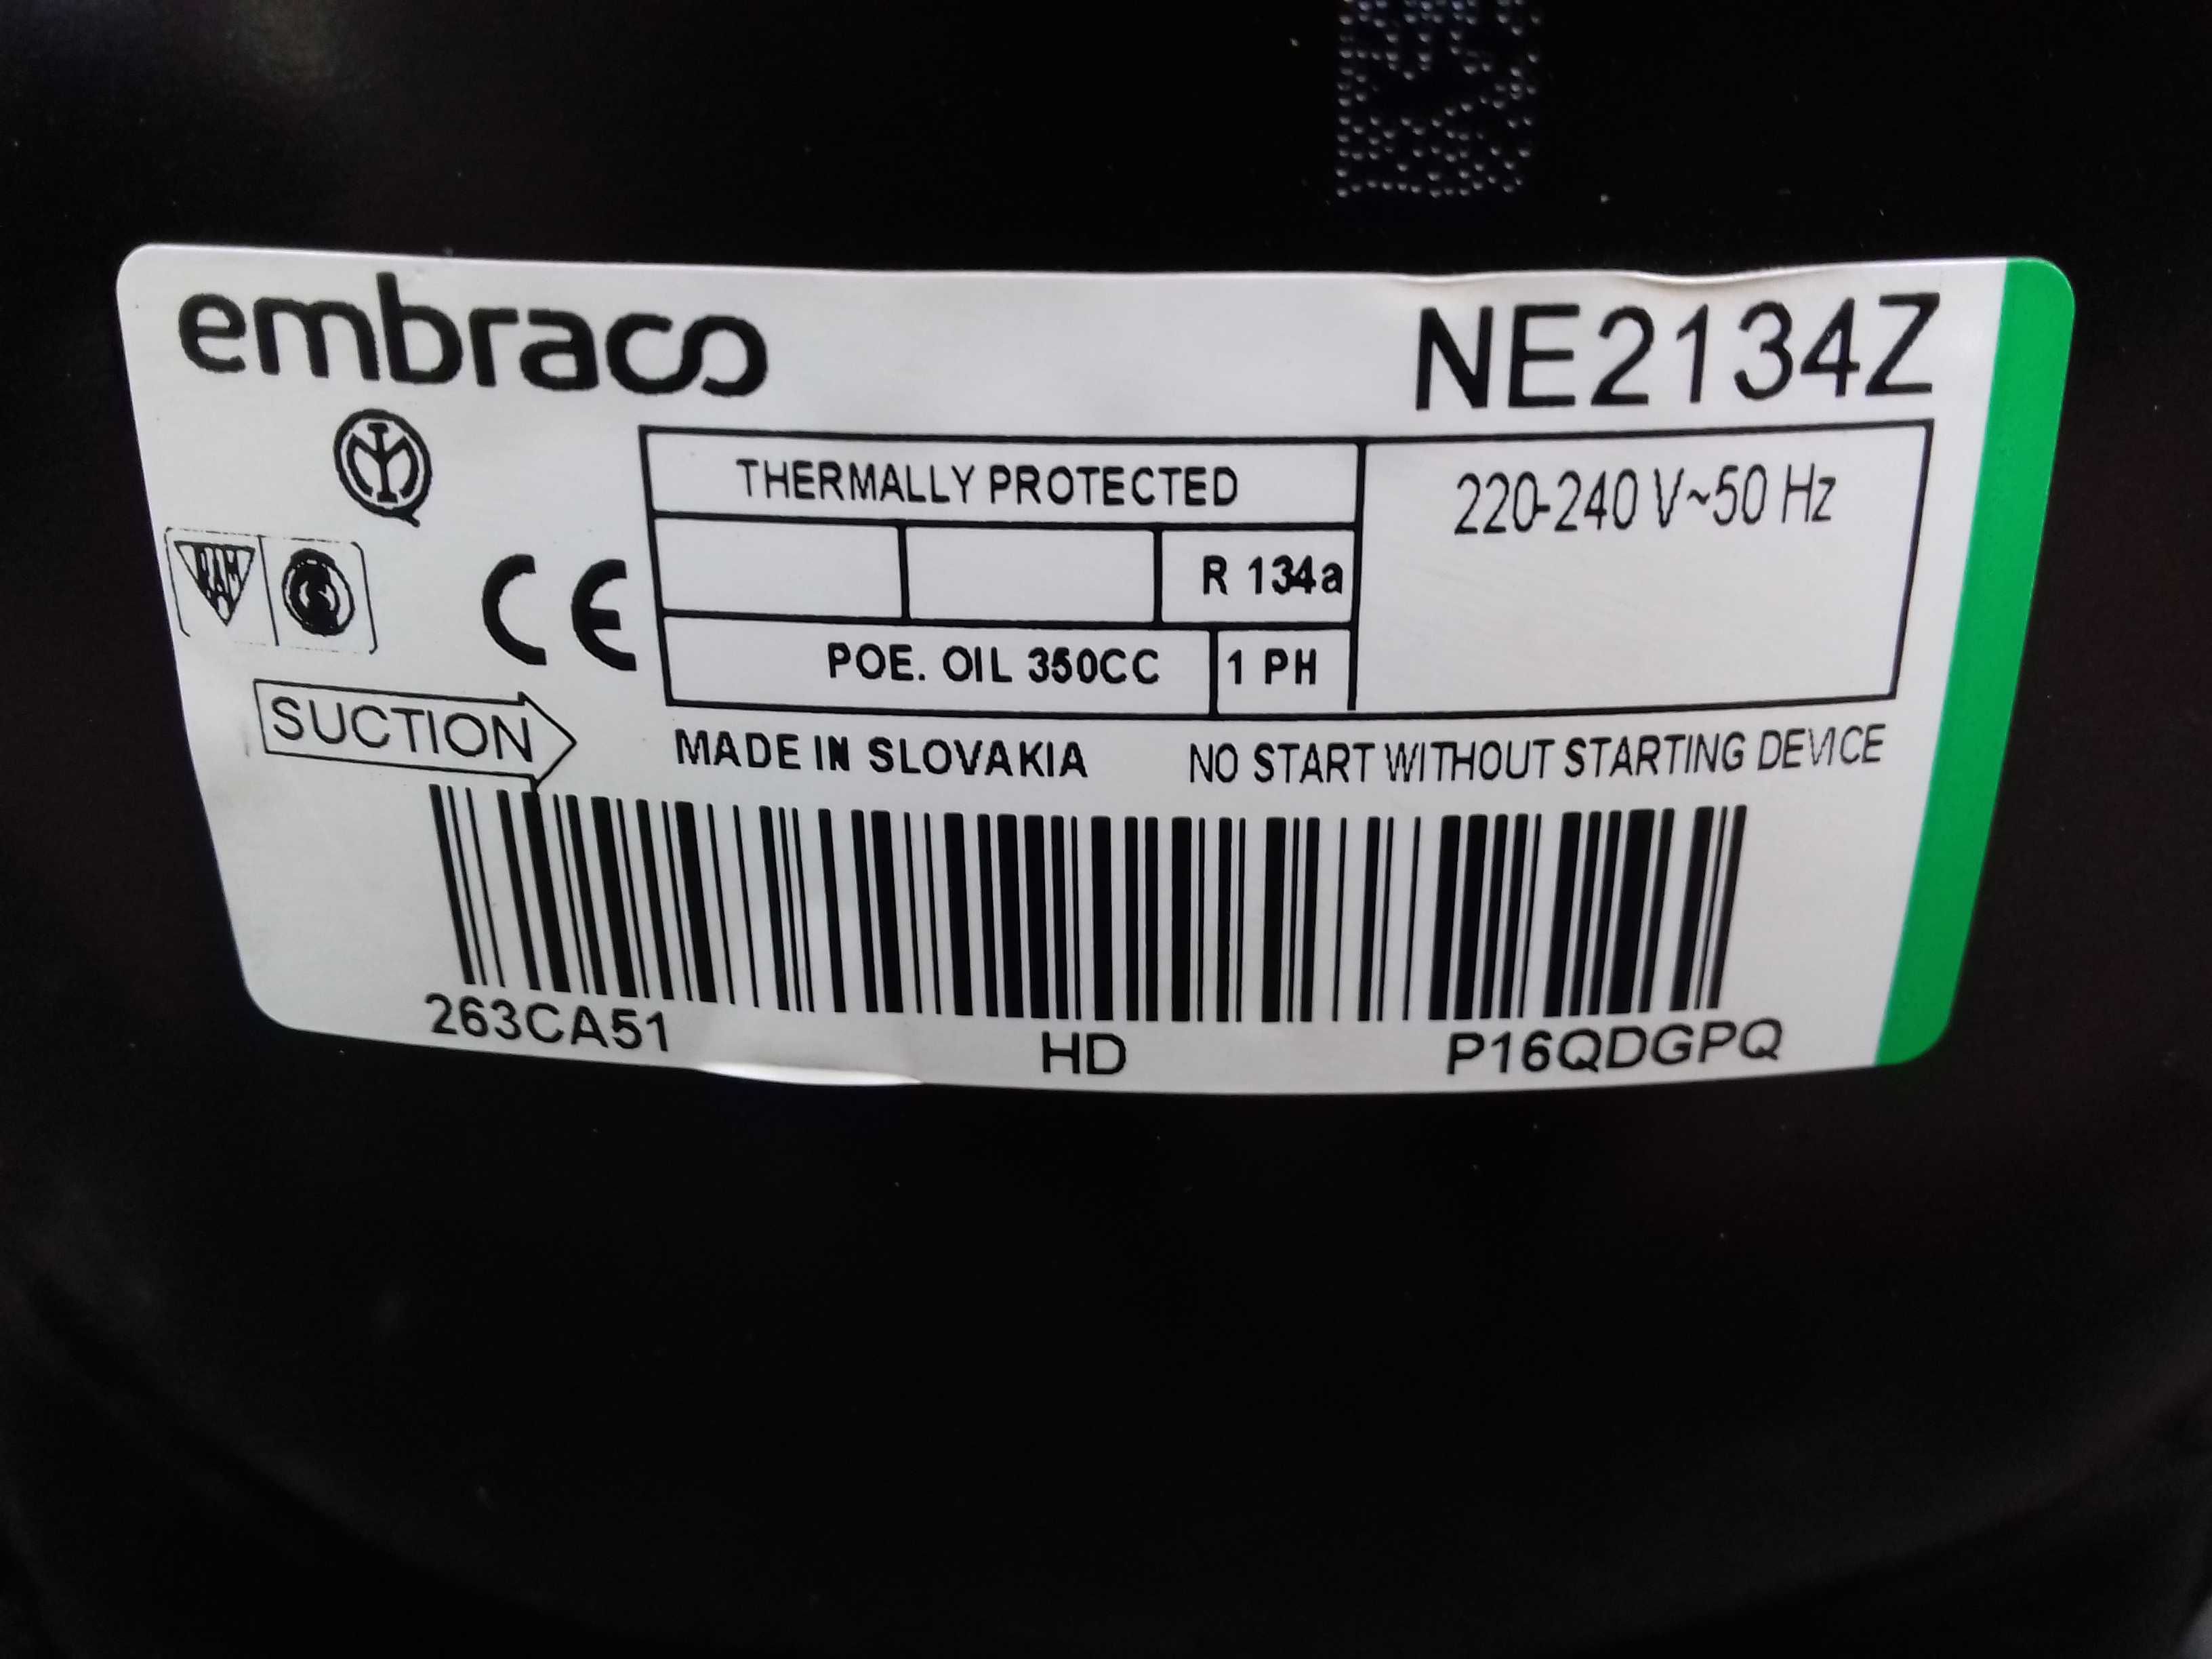 Sprężarka chłodnicza, agregat EMBRACO NE2134Z na czynnik R134a.Wysyłka